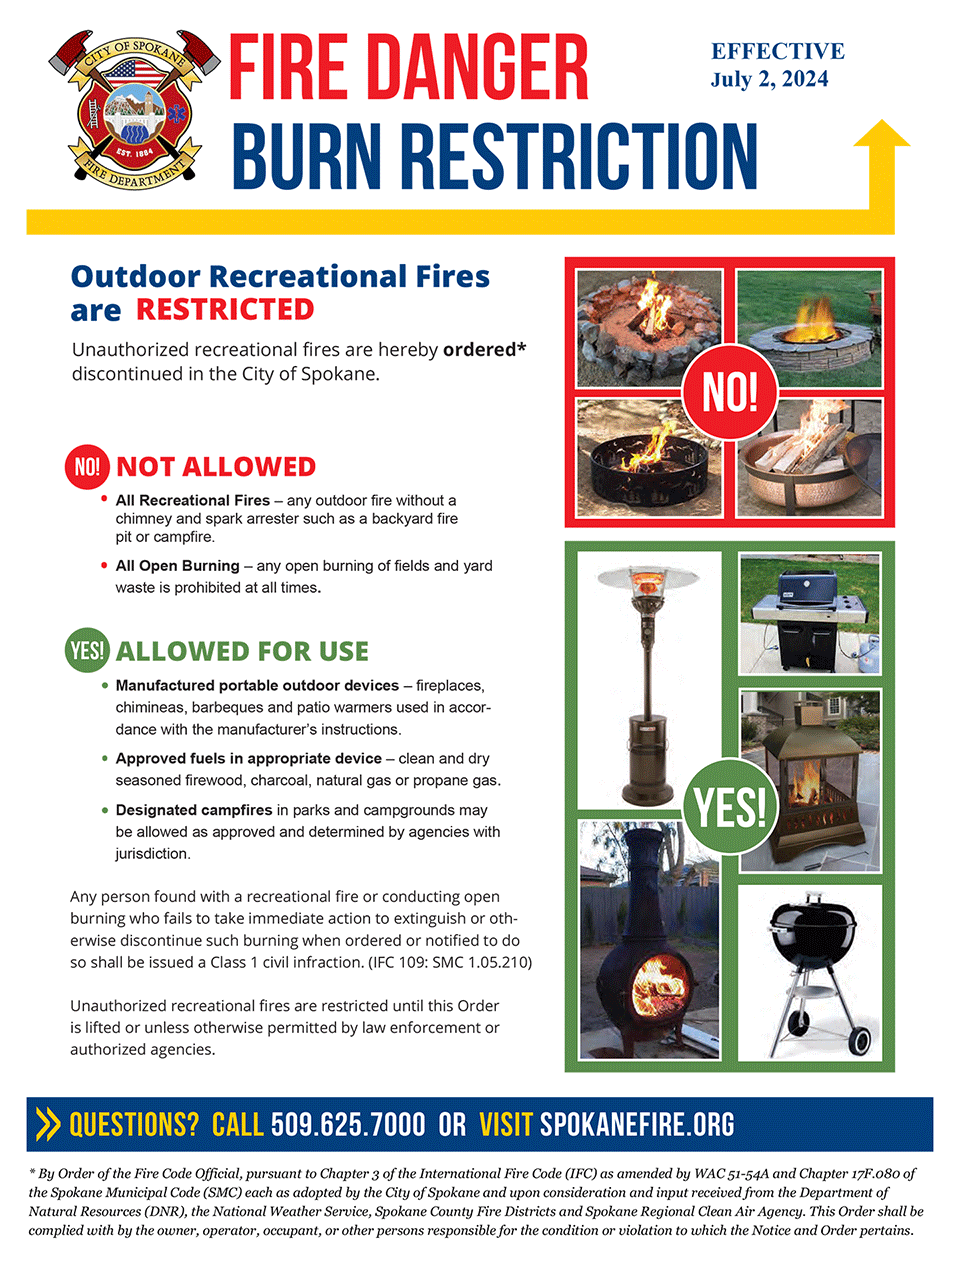 Burn Restriction Effective July 2, 2024